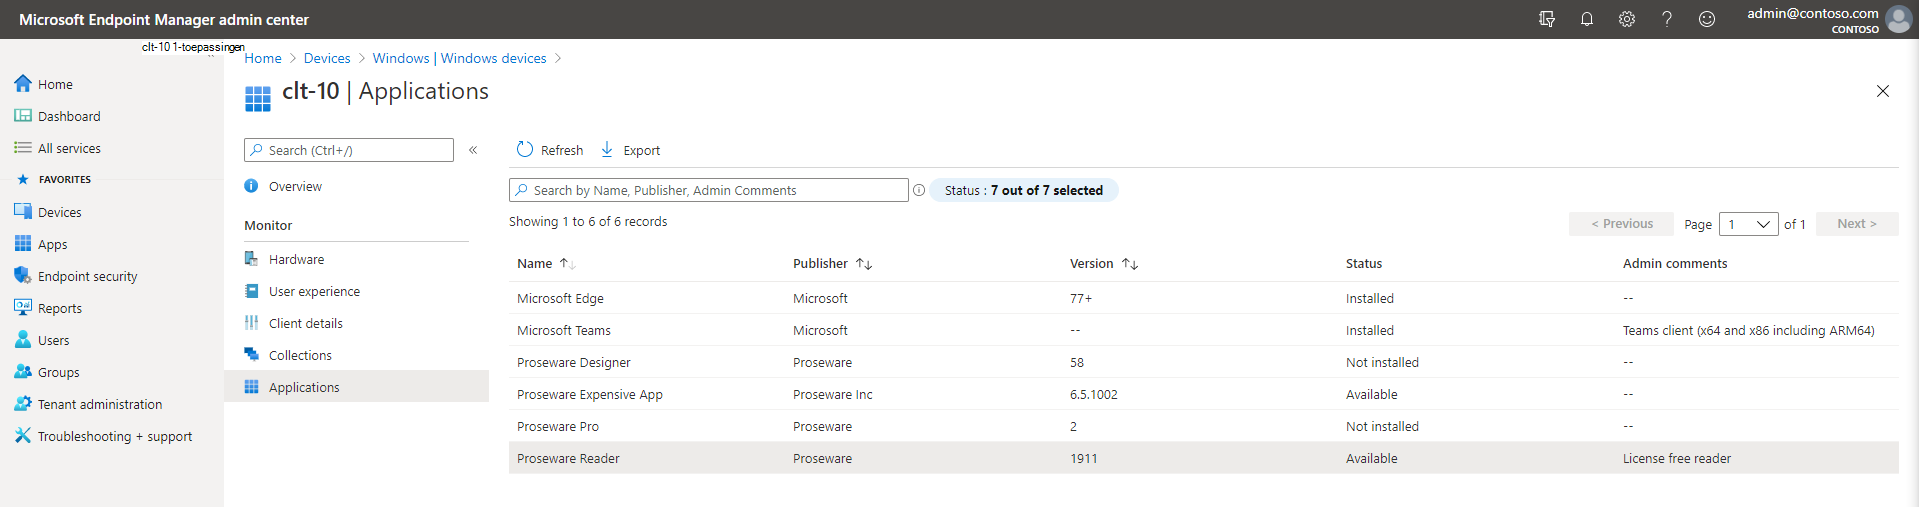 Schermopname van toepassingen in het Microsoft Endpoint Manager-beheercentrum.